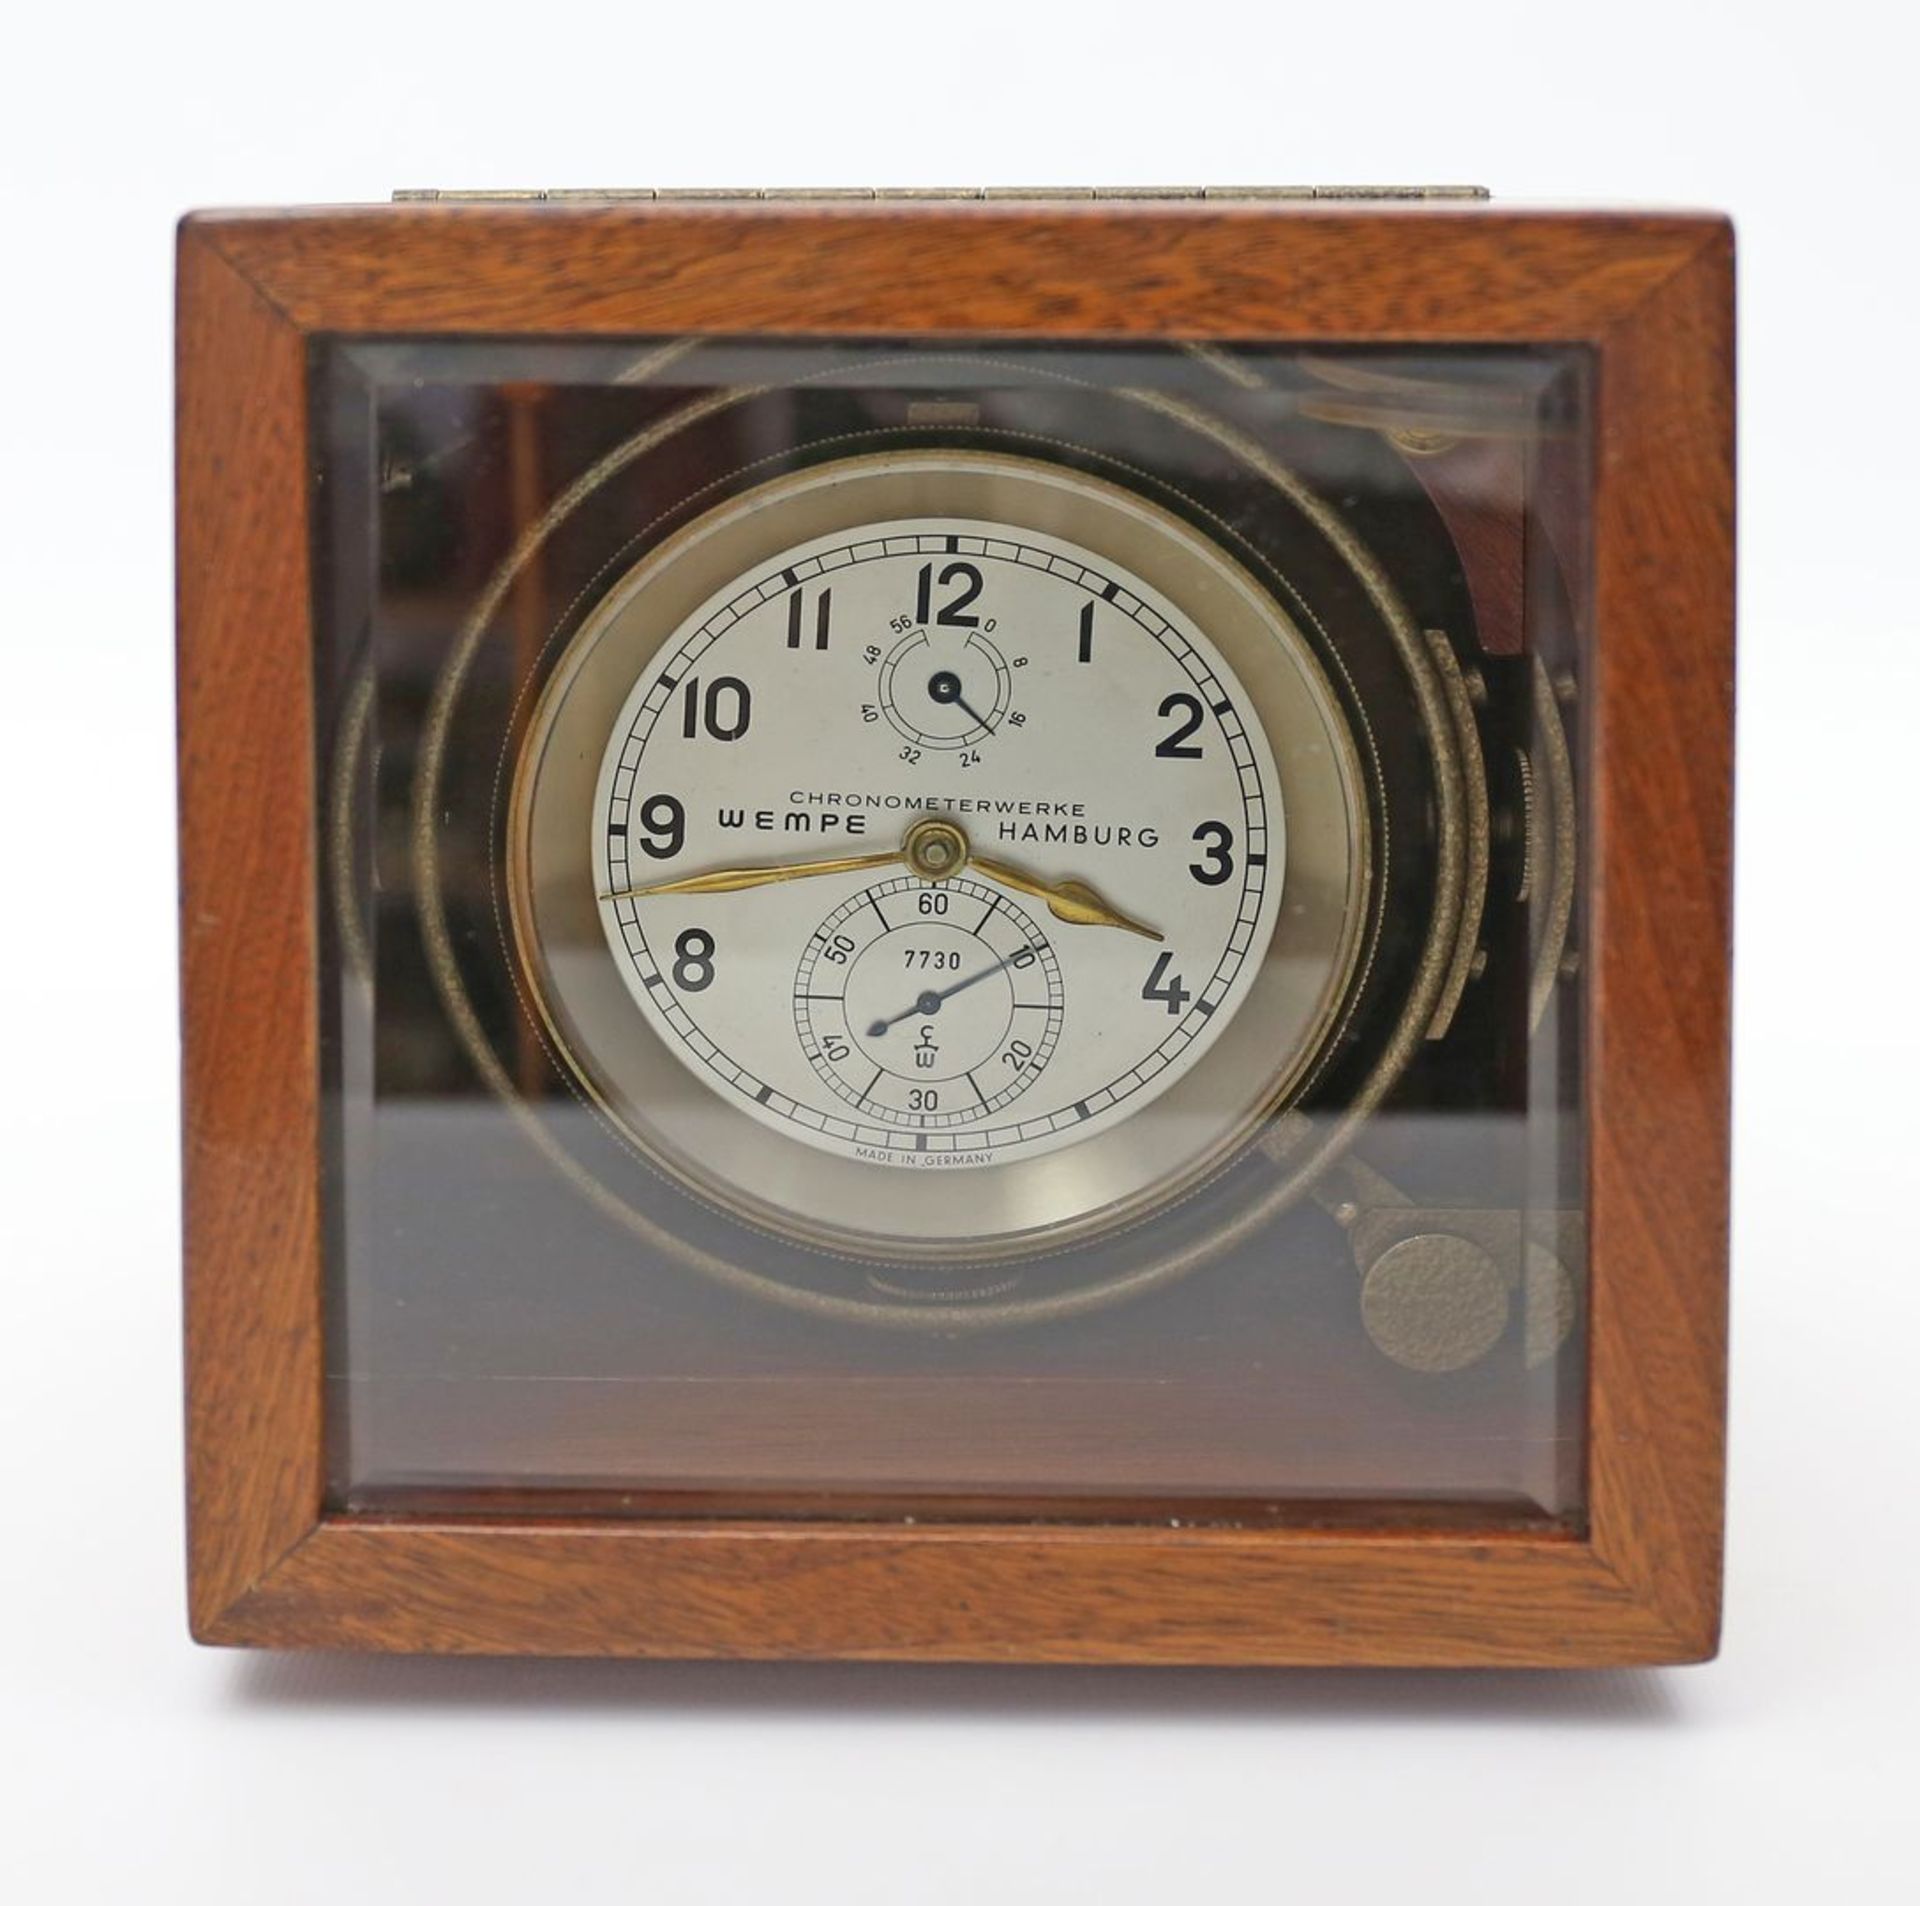 Marinechronometer, Chronometerwerke Wempe, Hamburg. - Image 2 of 2